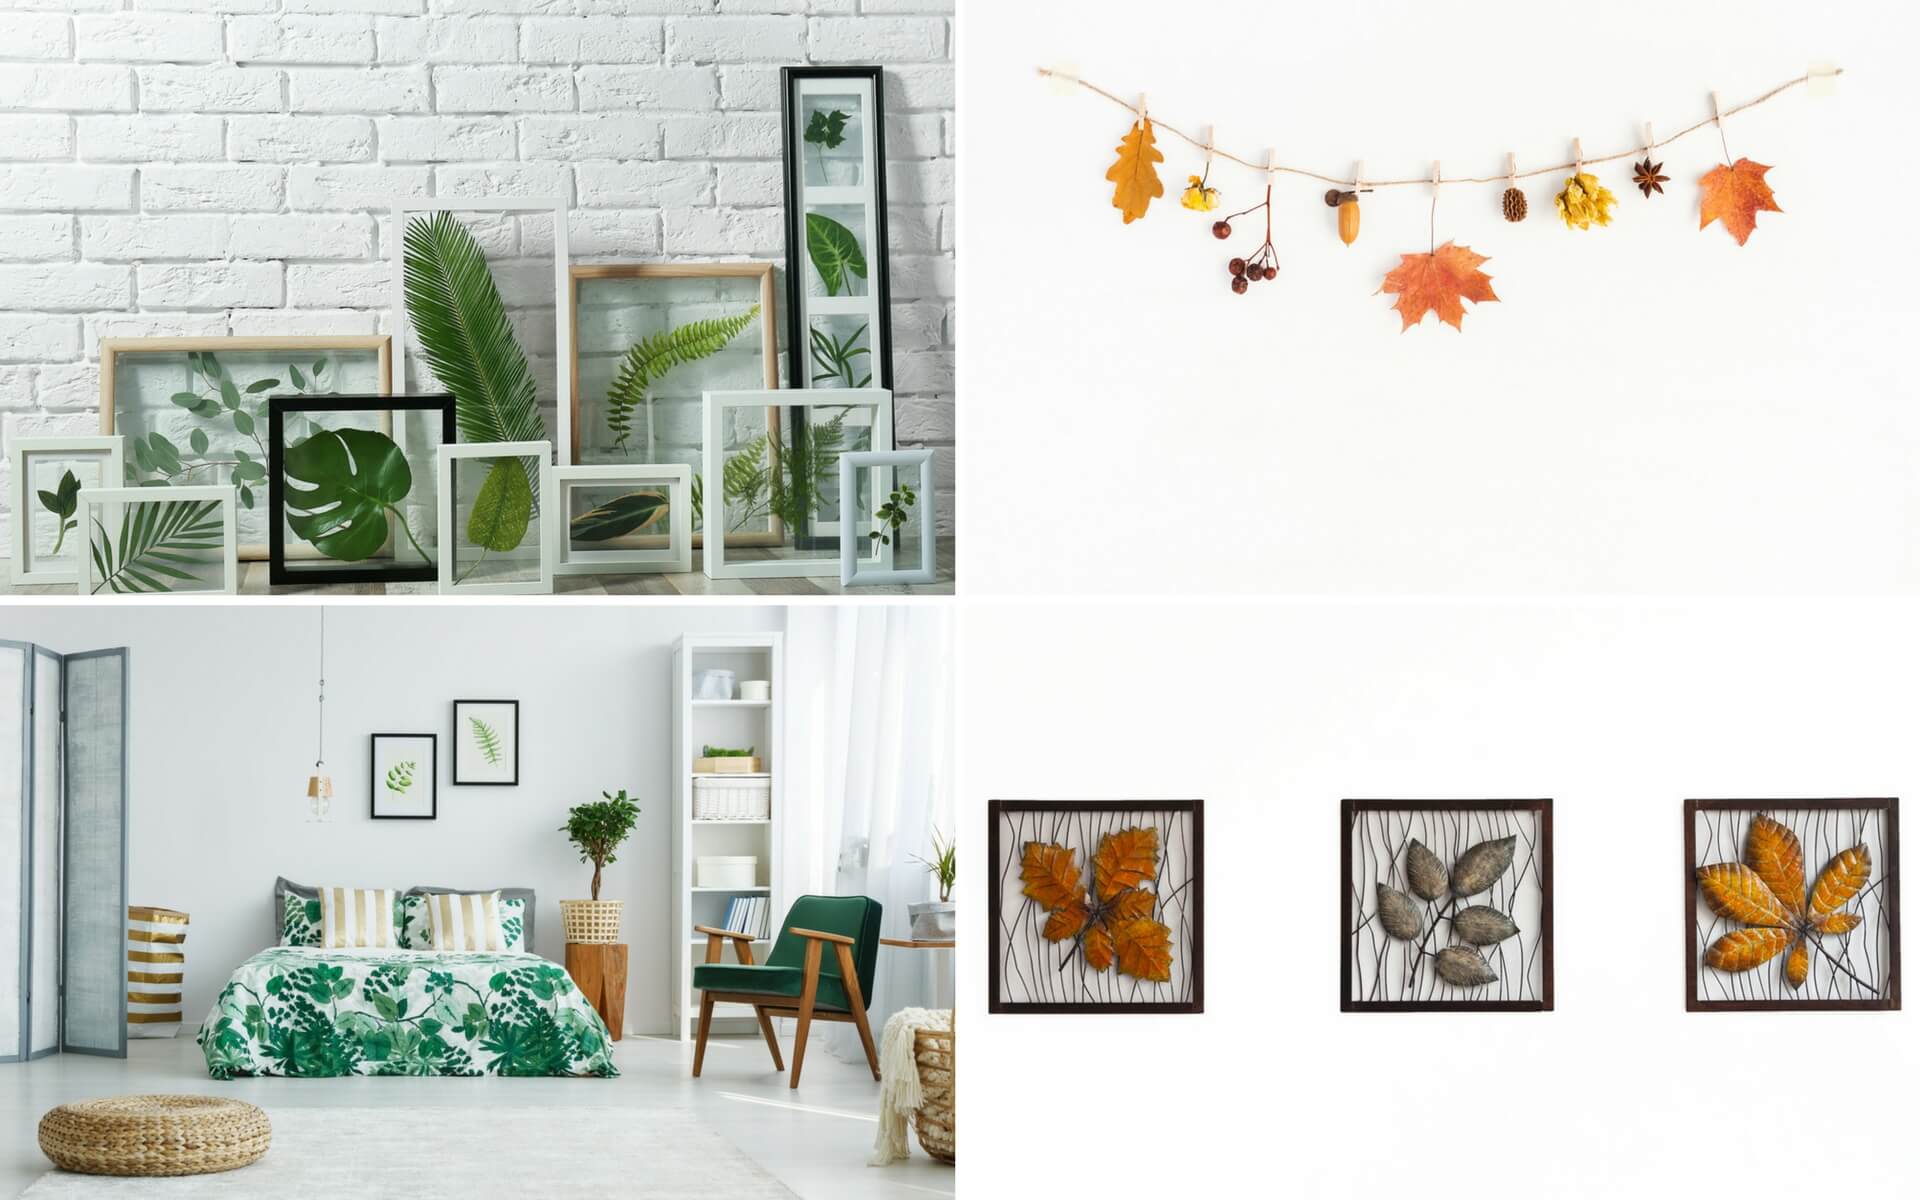 Consigli pratici per decorare le pareti di casa utilizzando semplici foglie